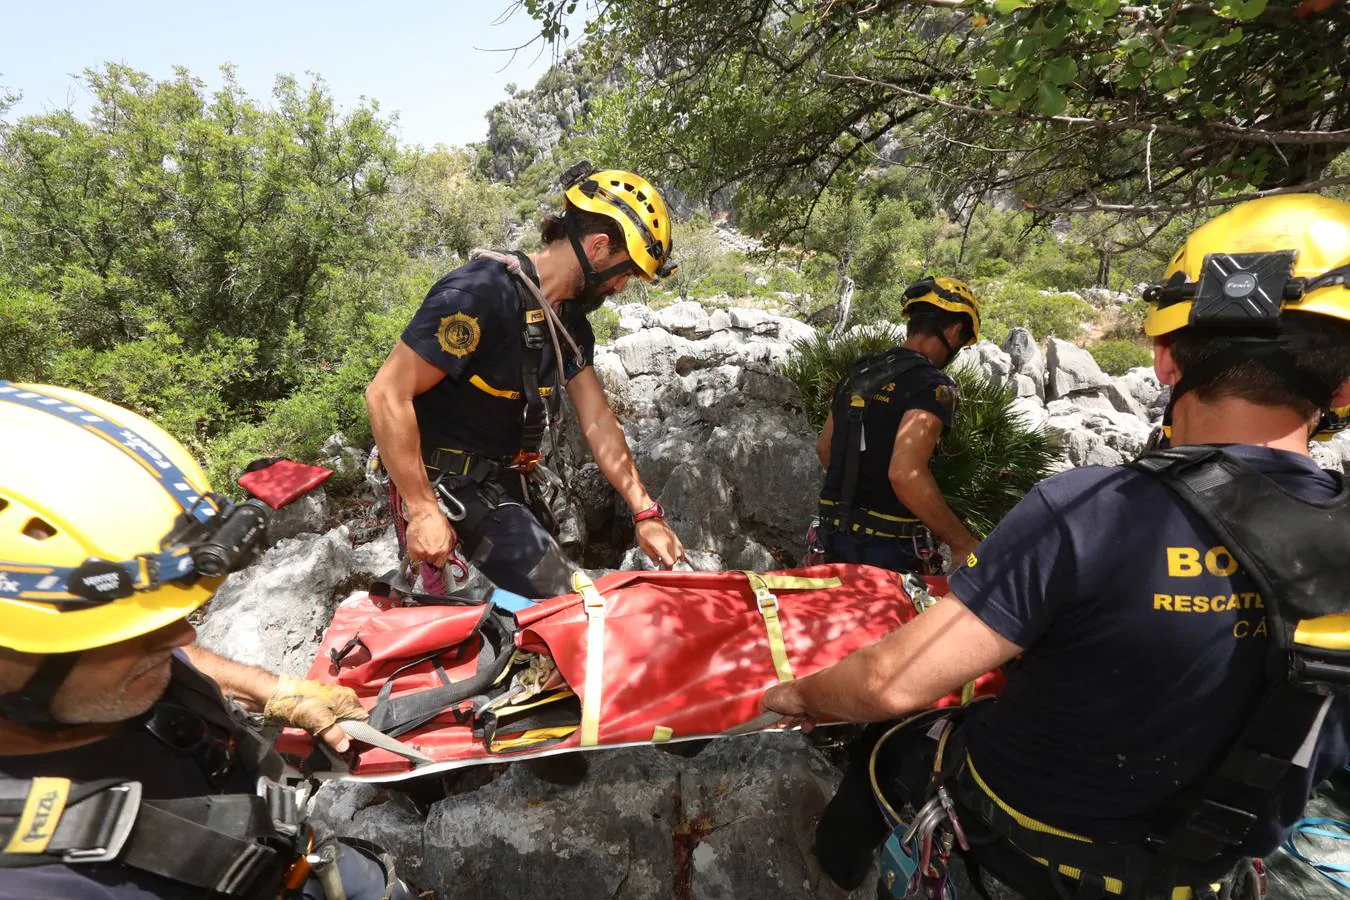 El Grupo de Rescate en Montaña de Bomberos de Cádiz en acción, 20 años desafiando lo imposible